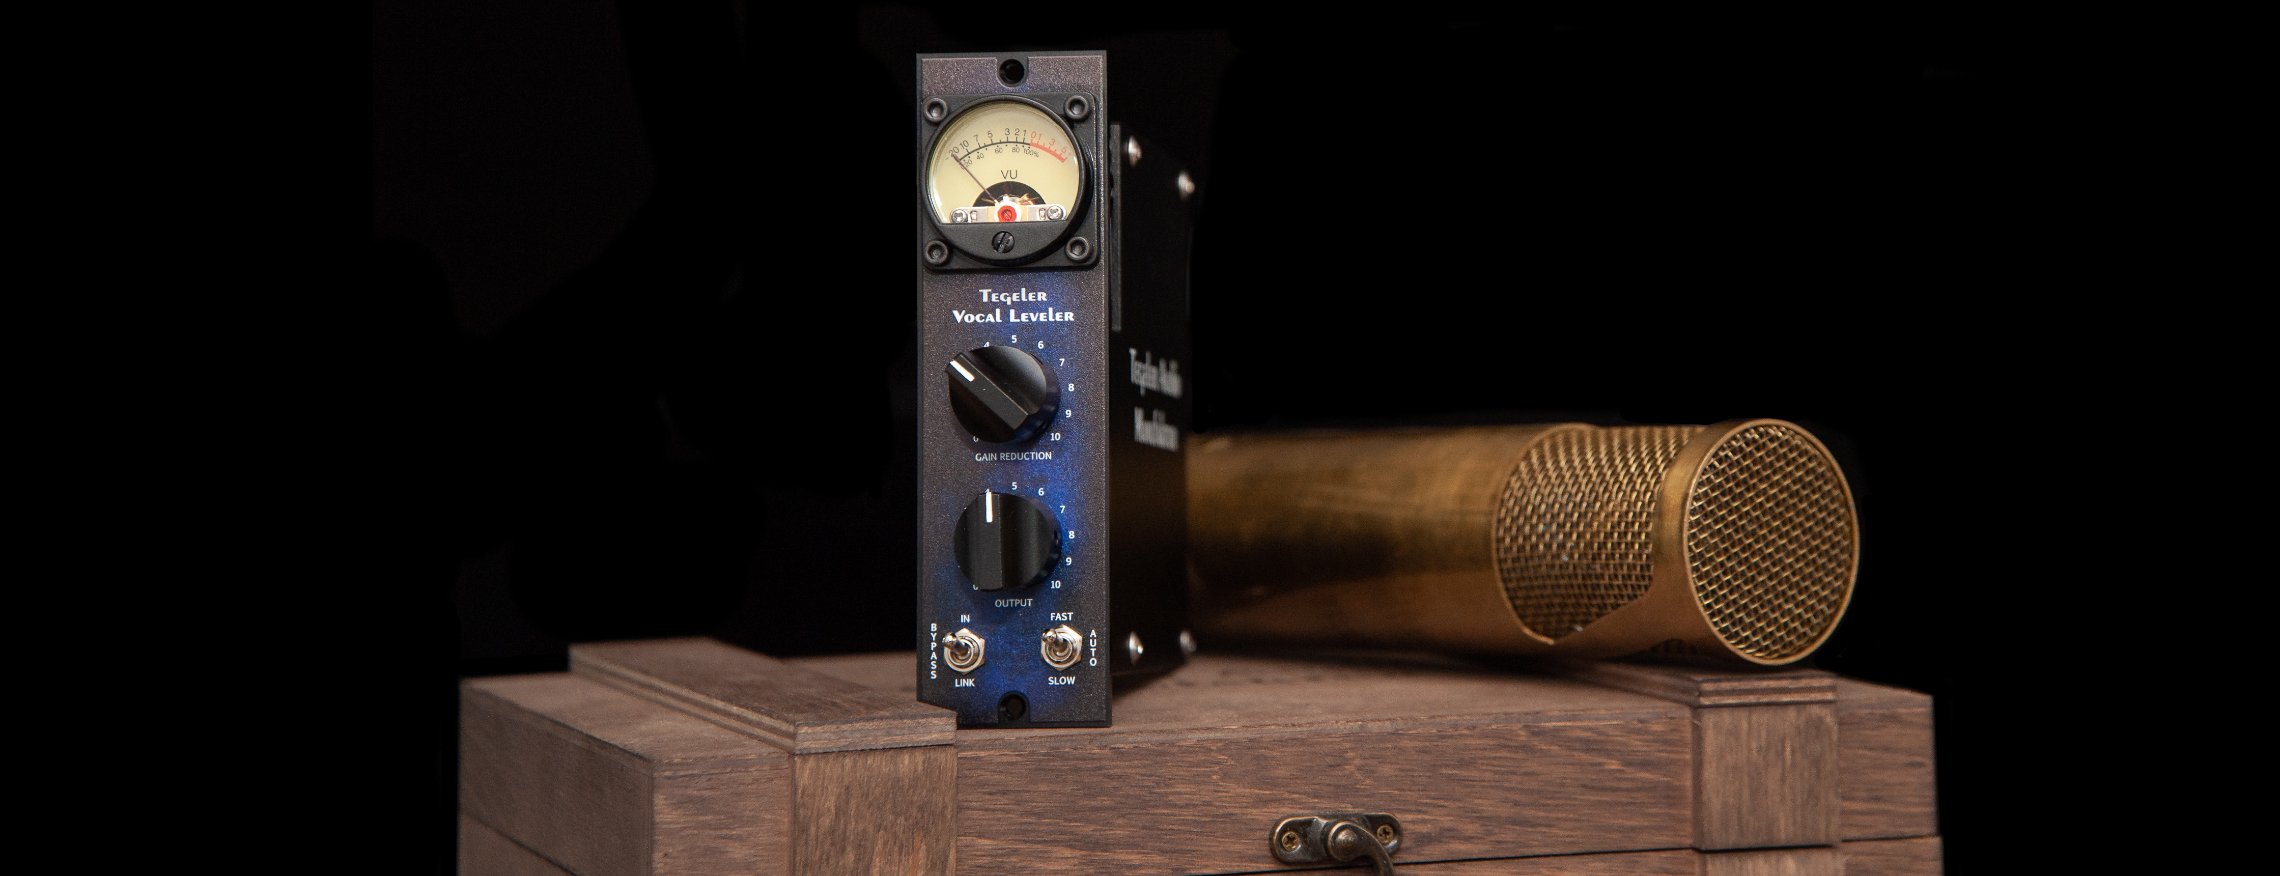 Tegeler Audio Manufaktur Vocal Leveler 500 - System 500 componenten - Variation 1